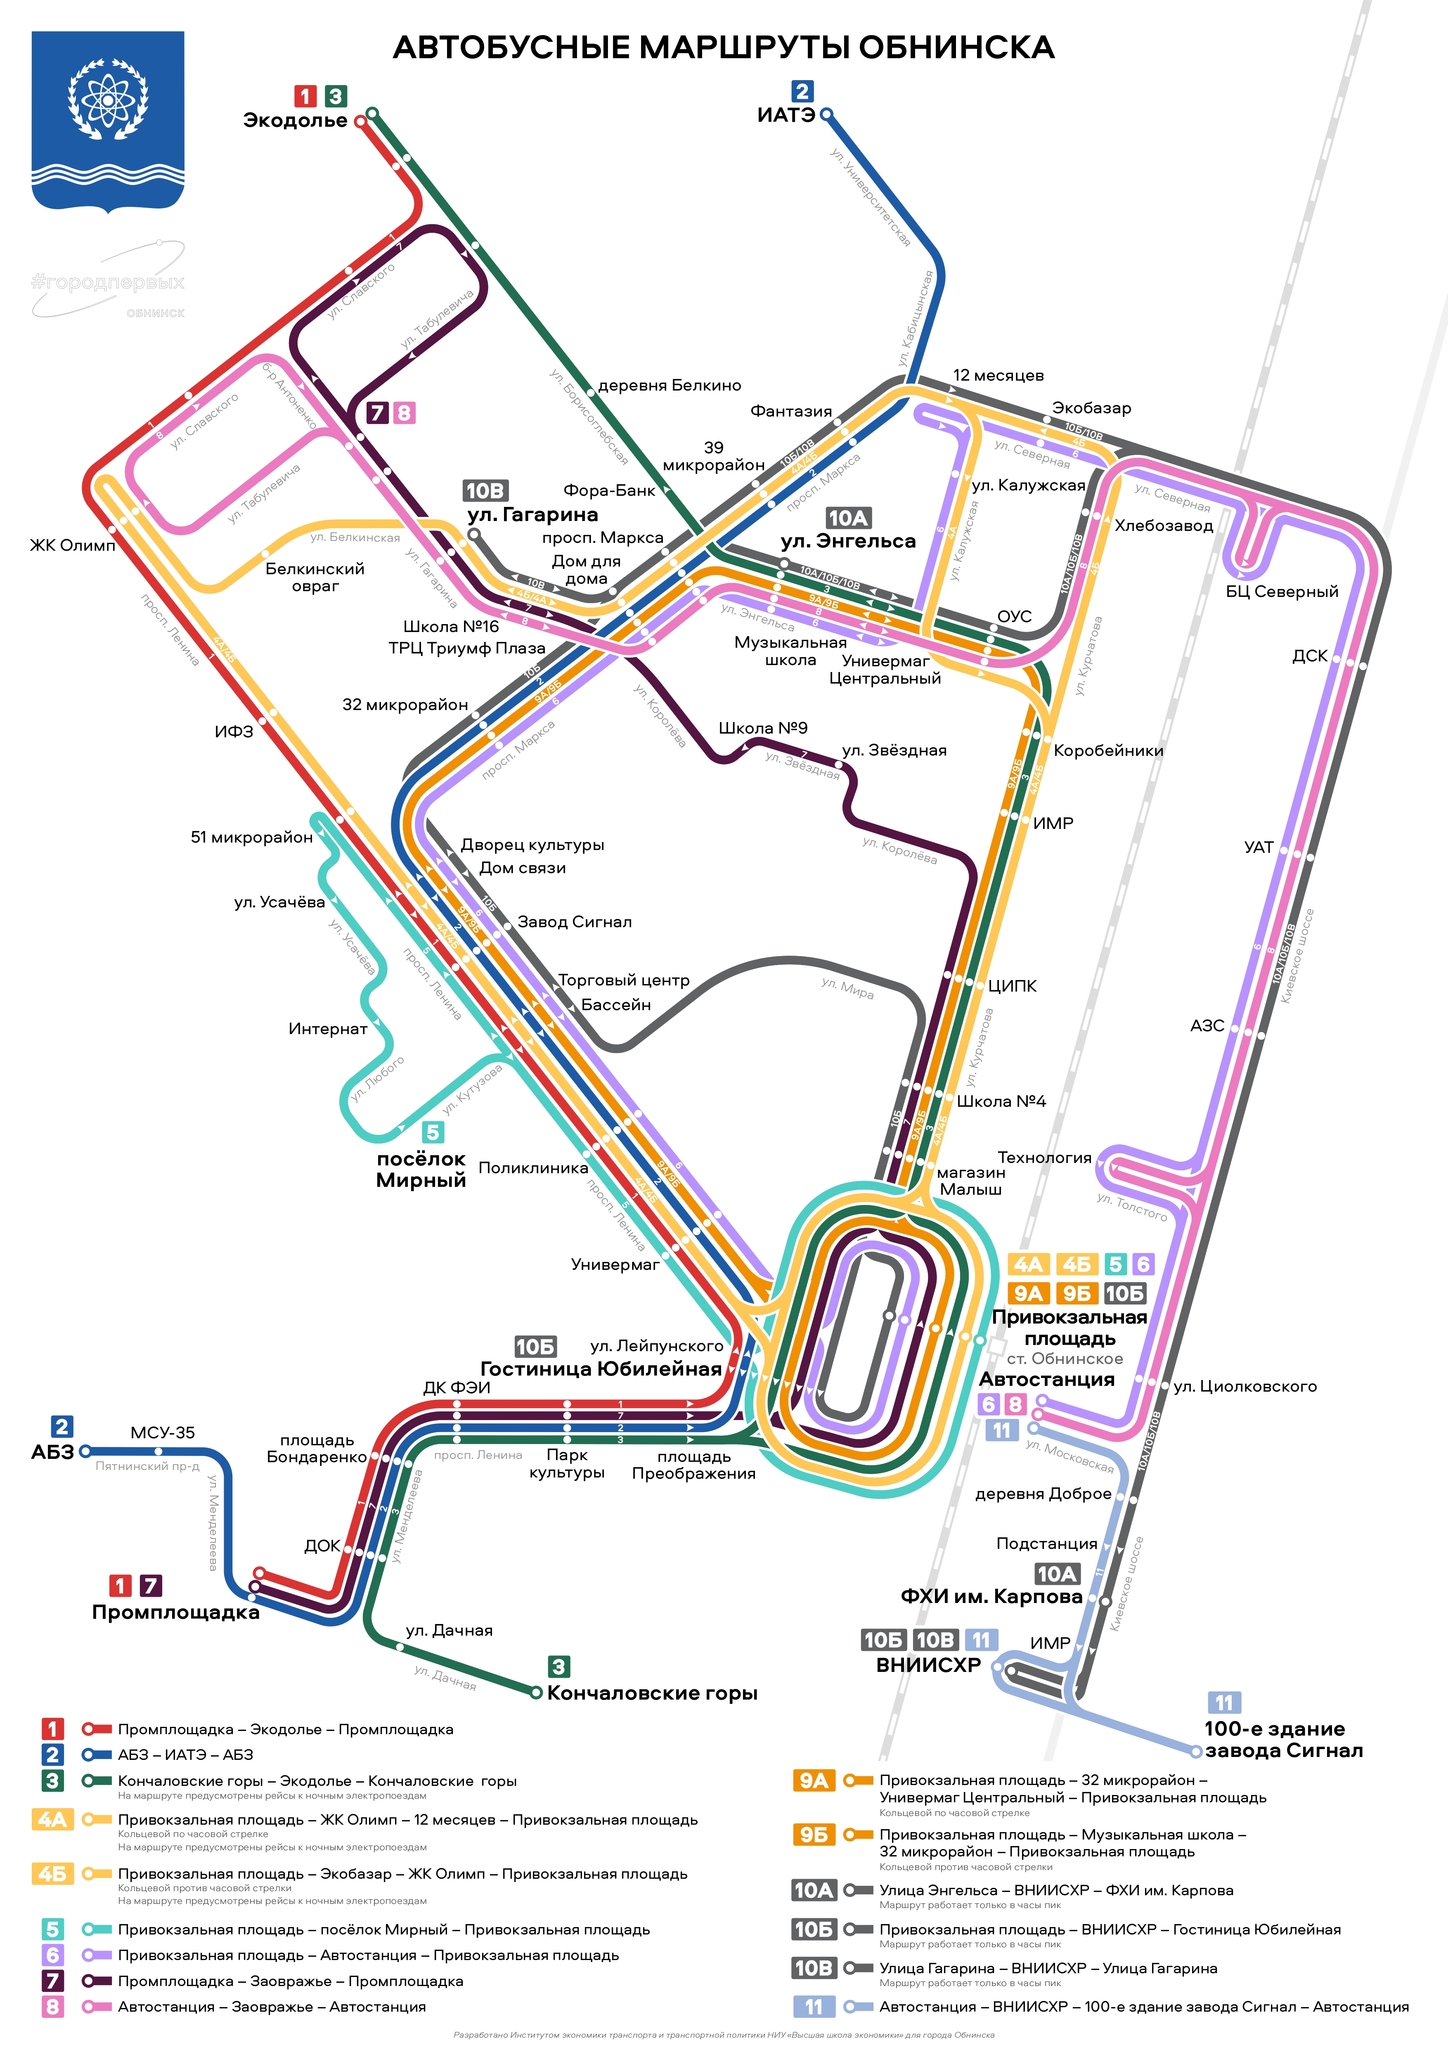 Cхема новых автобусных маршрутов Обнинска